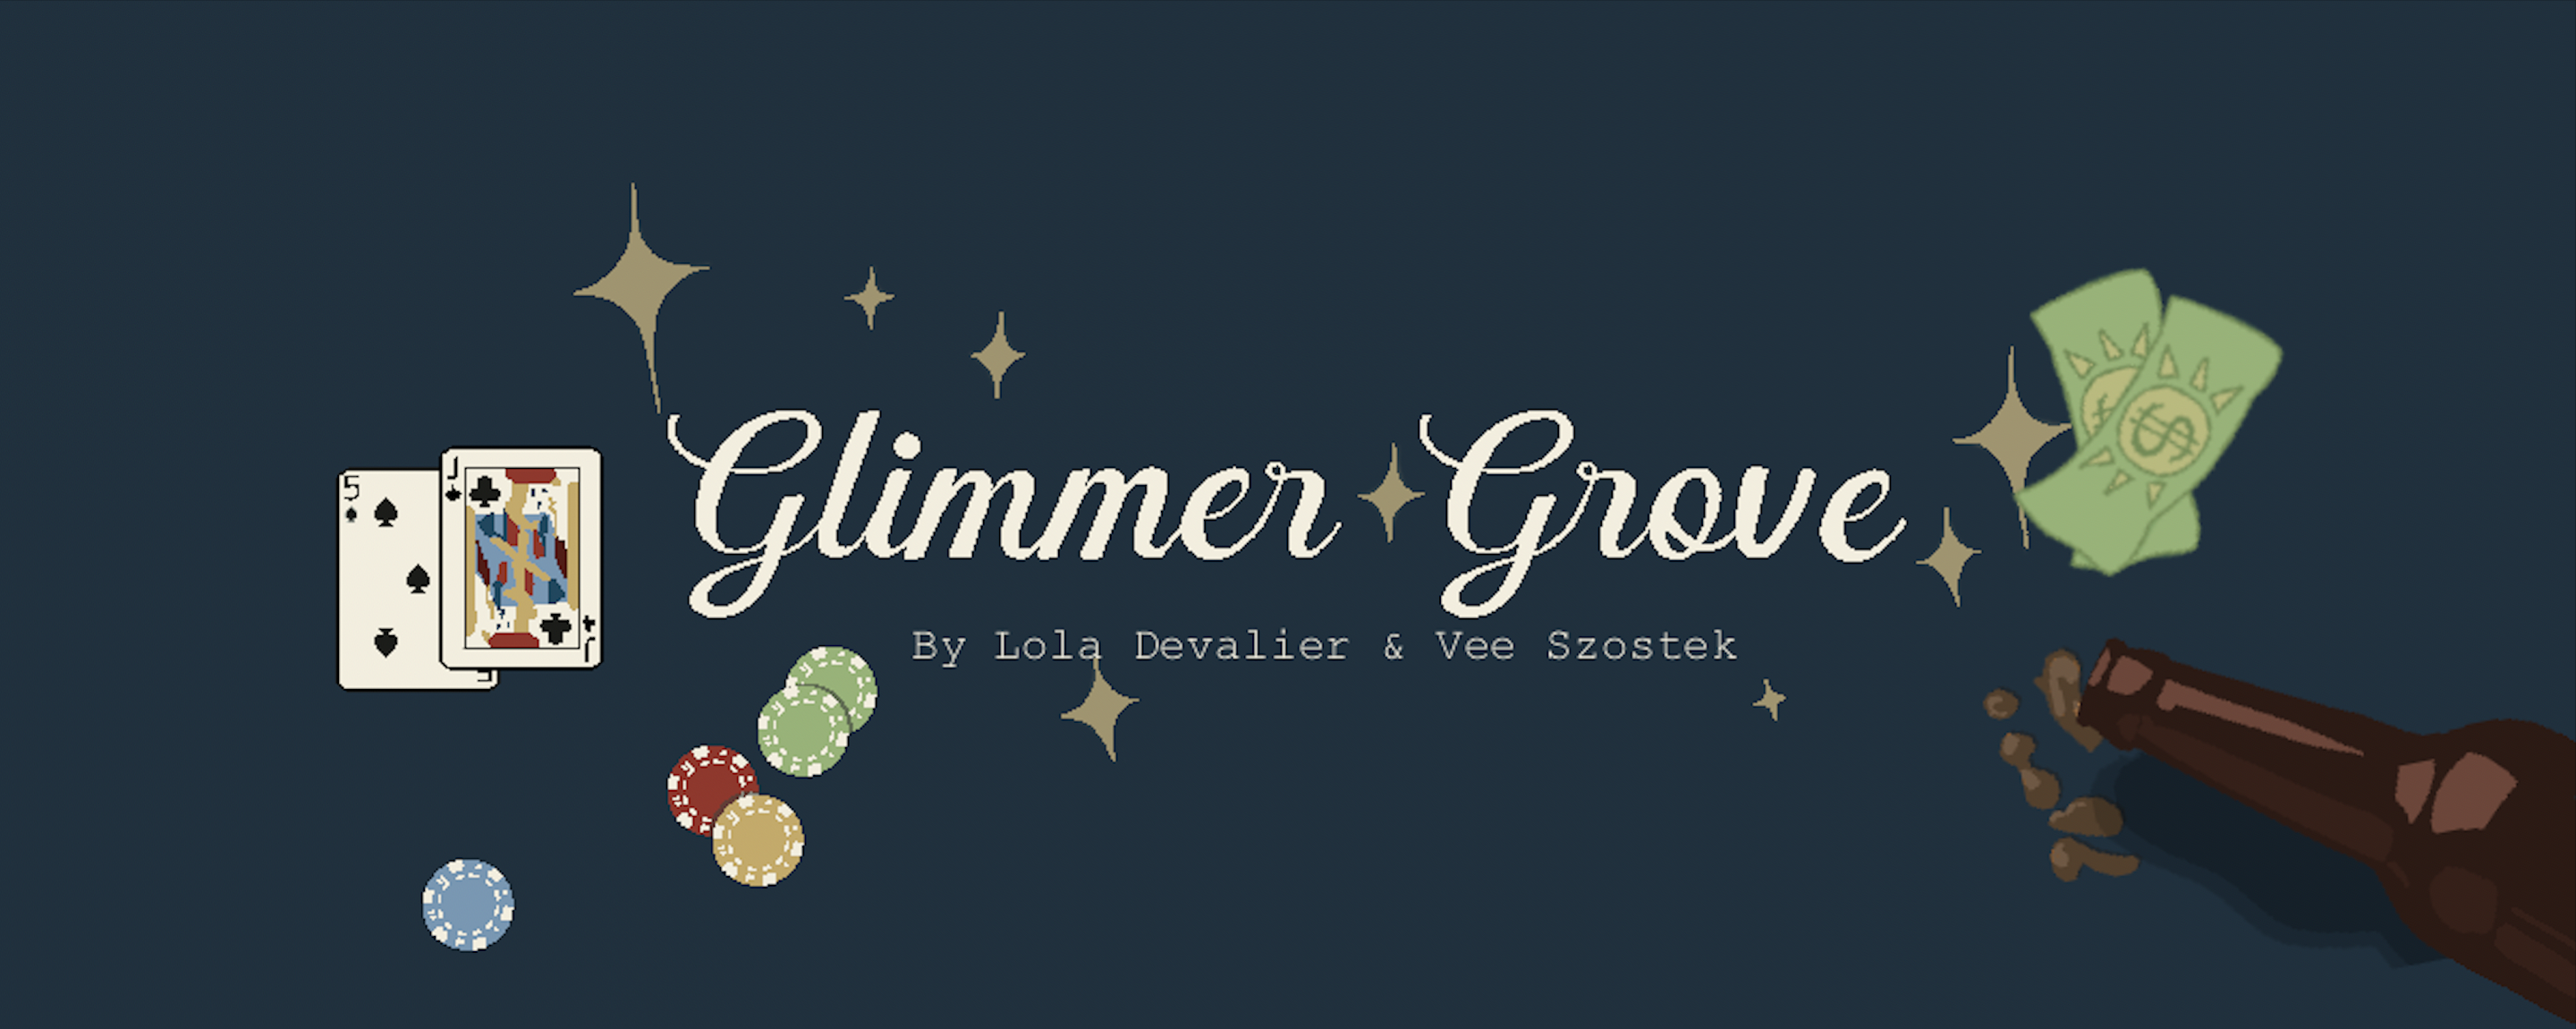 Glimmer Grove